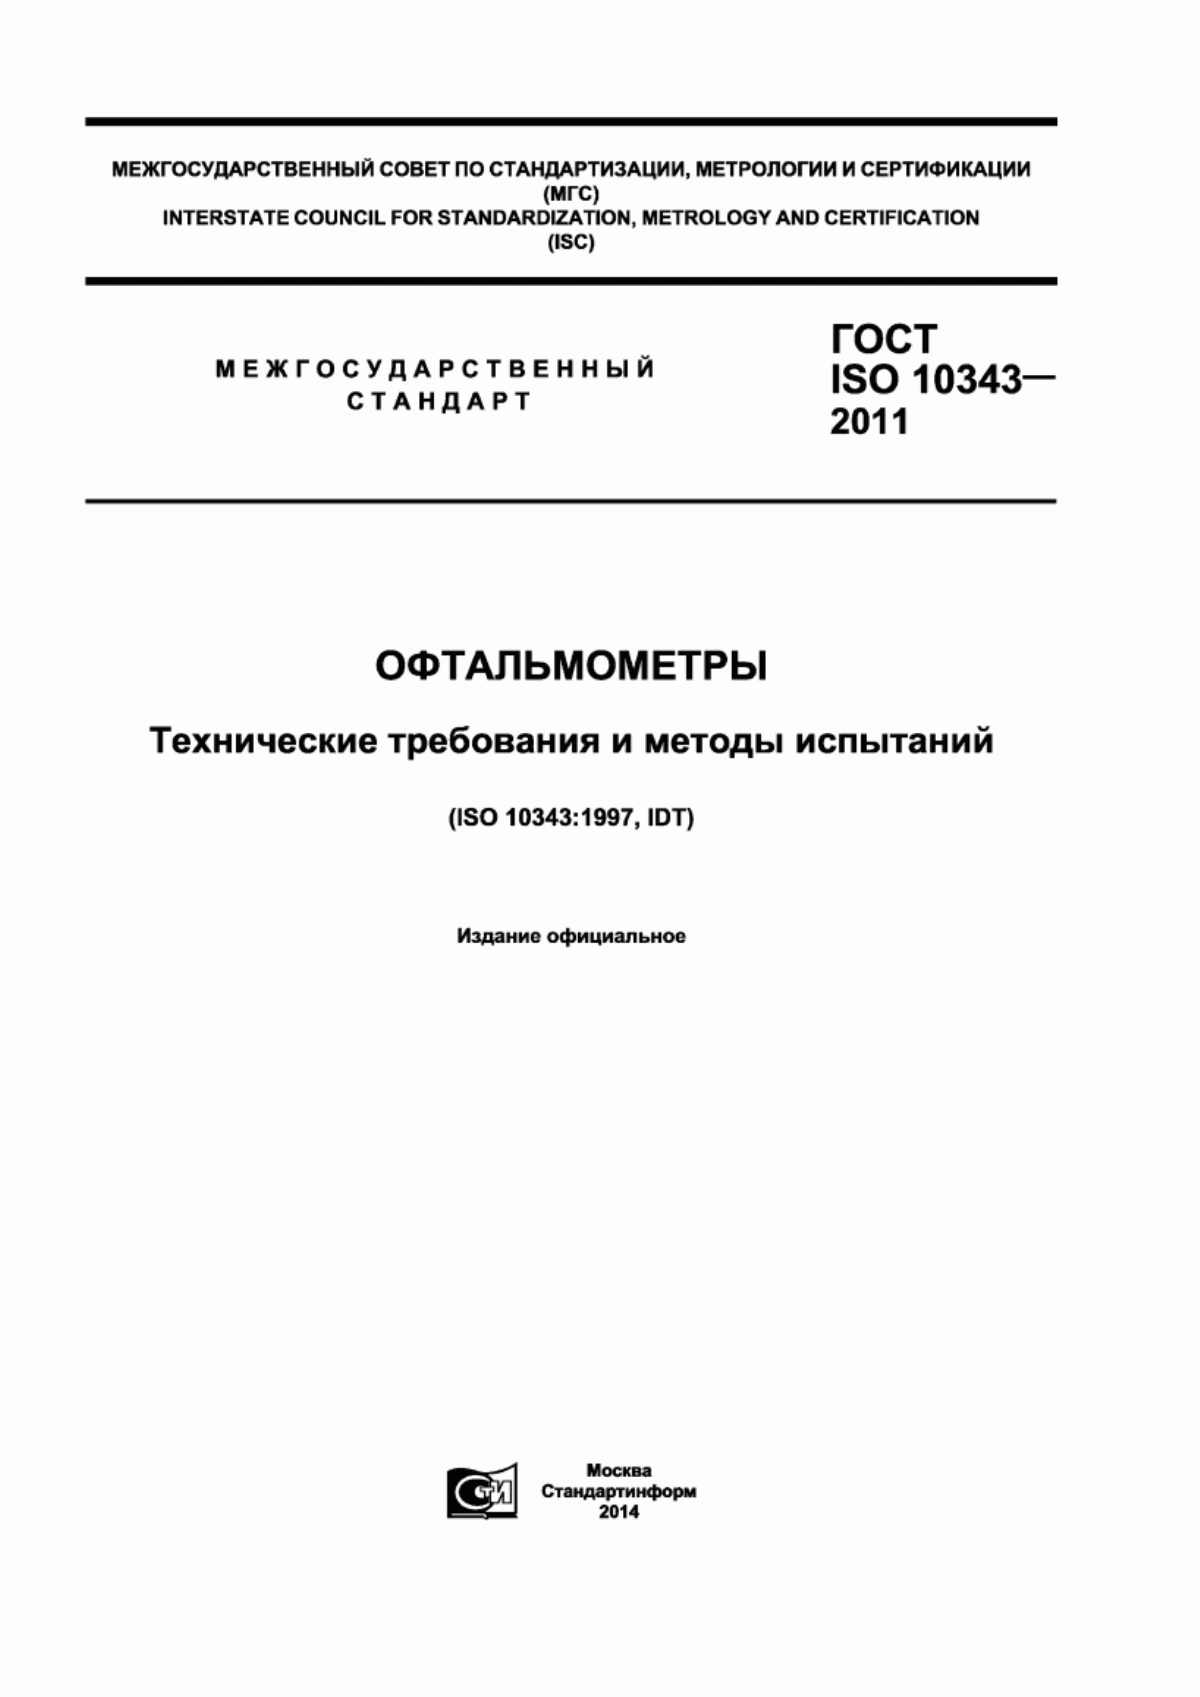 ГОСТ ISO 10343-2011 Офтальмометры. Технические требования и методы испытаний